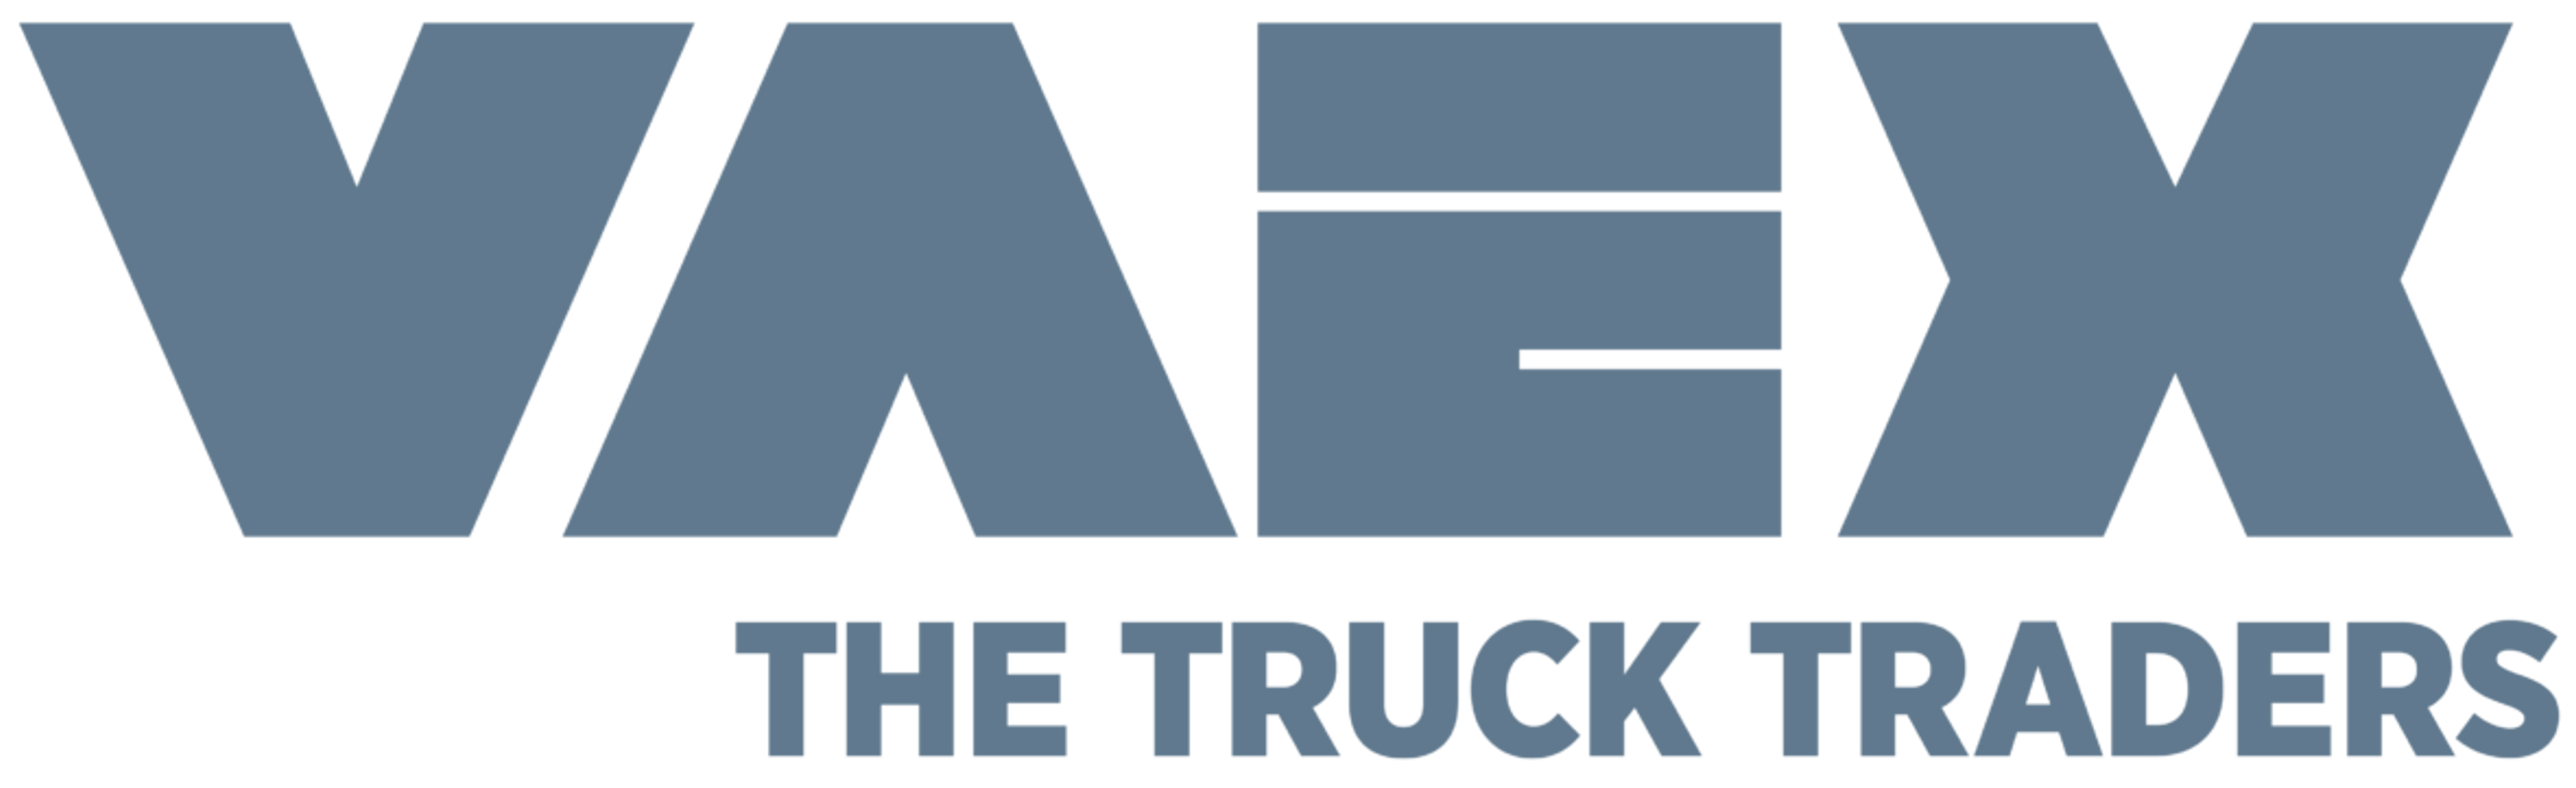 Logo Vaex Truck Traders